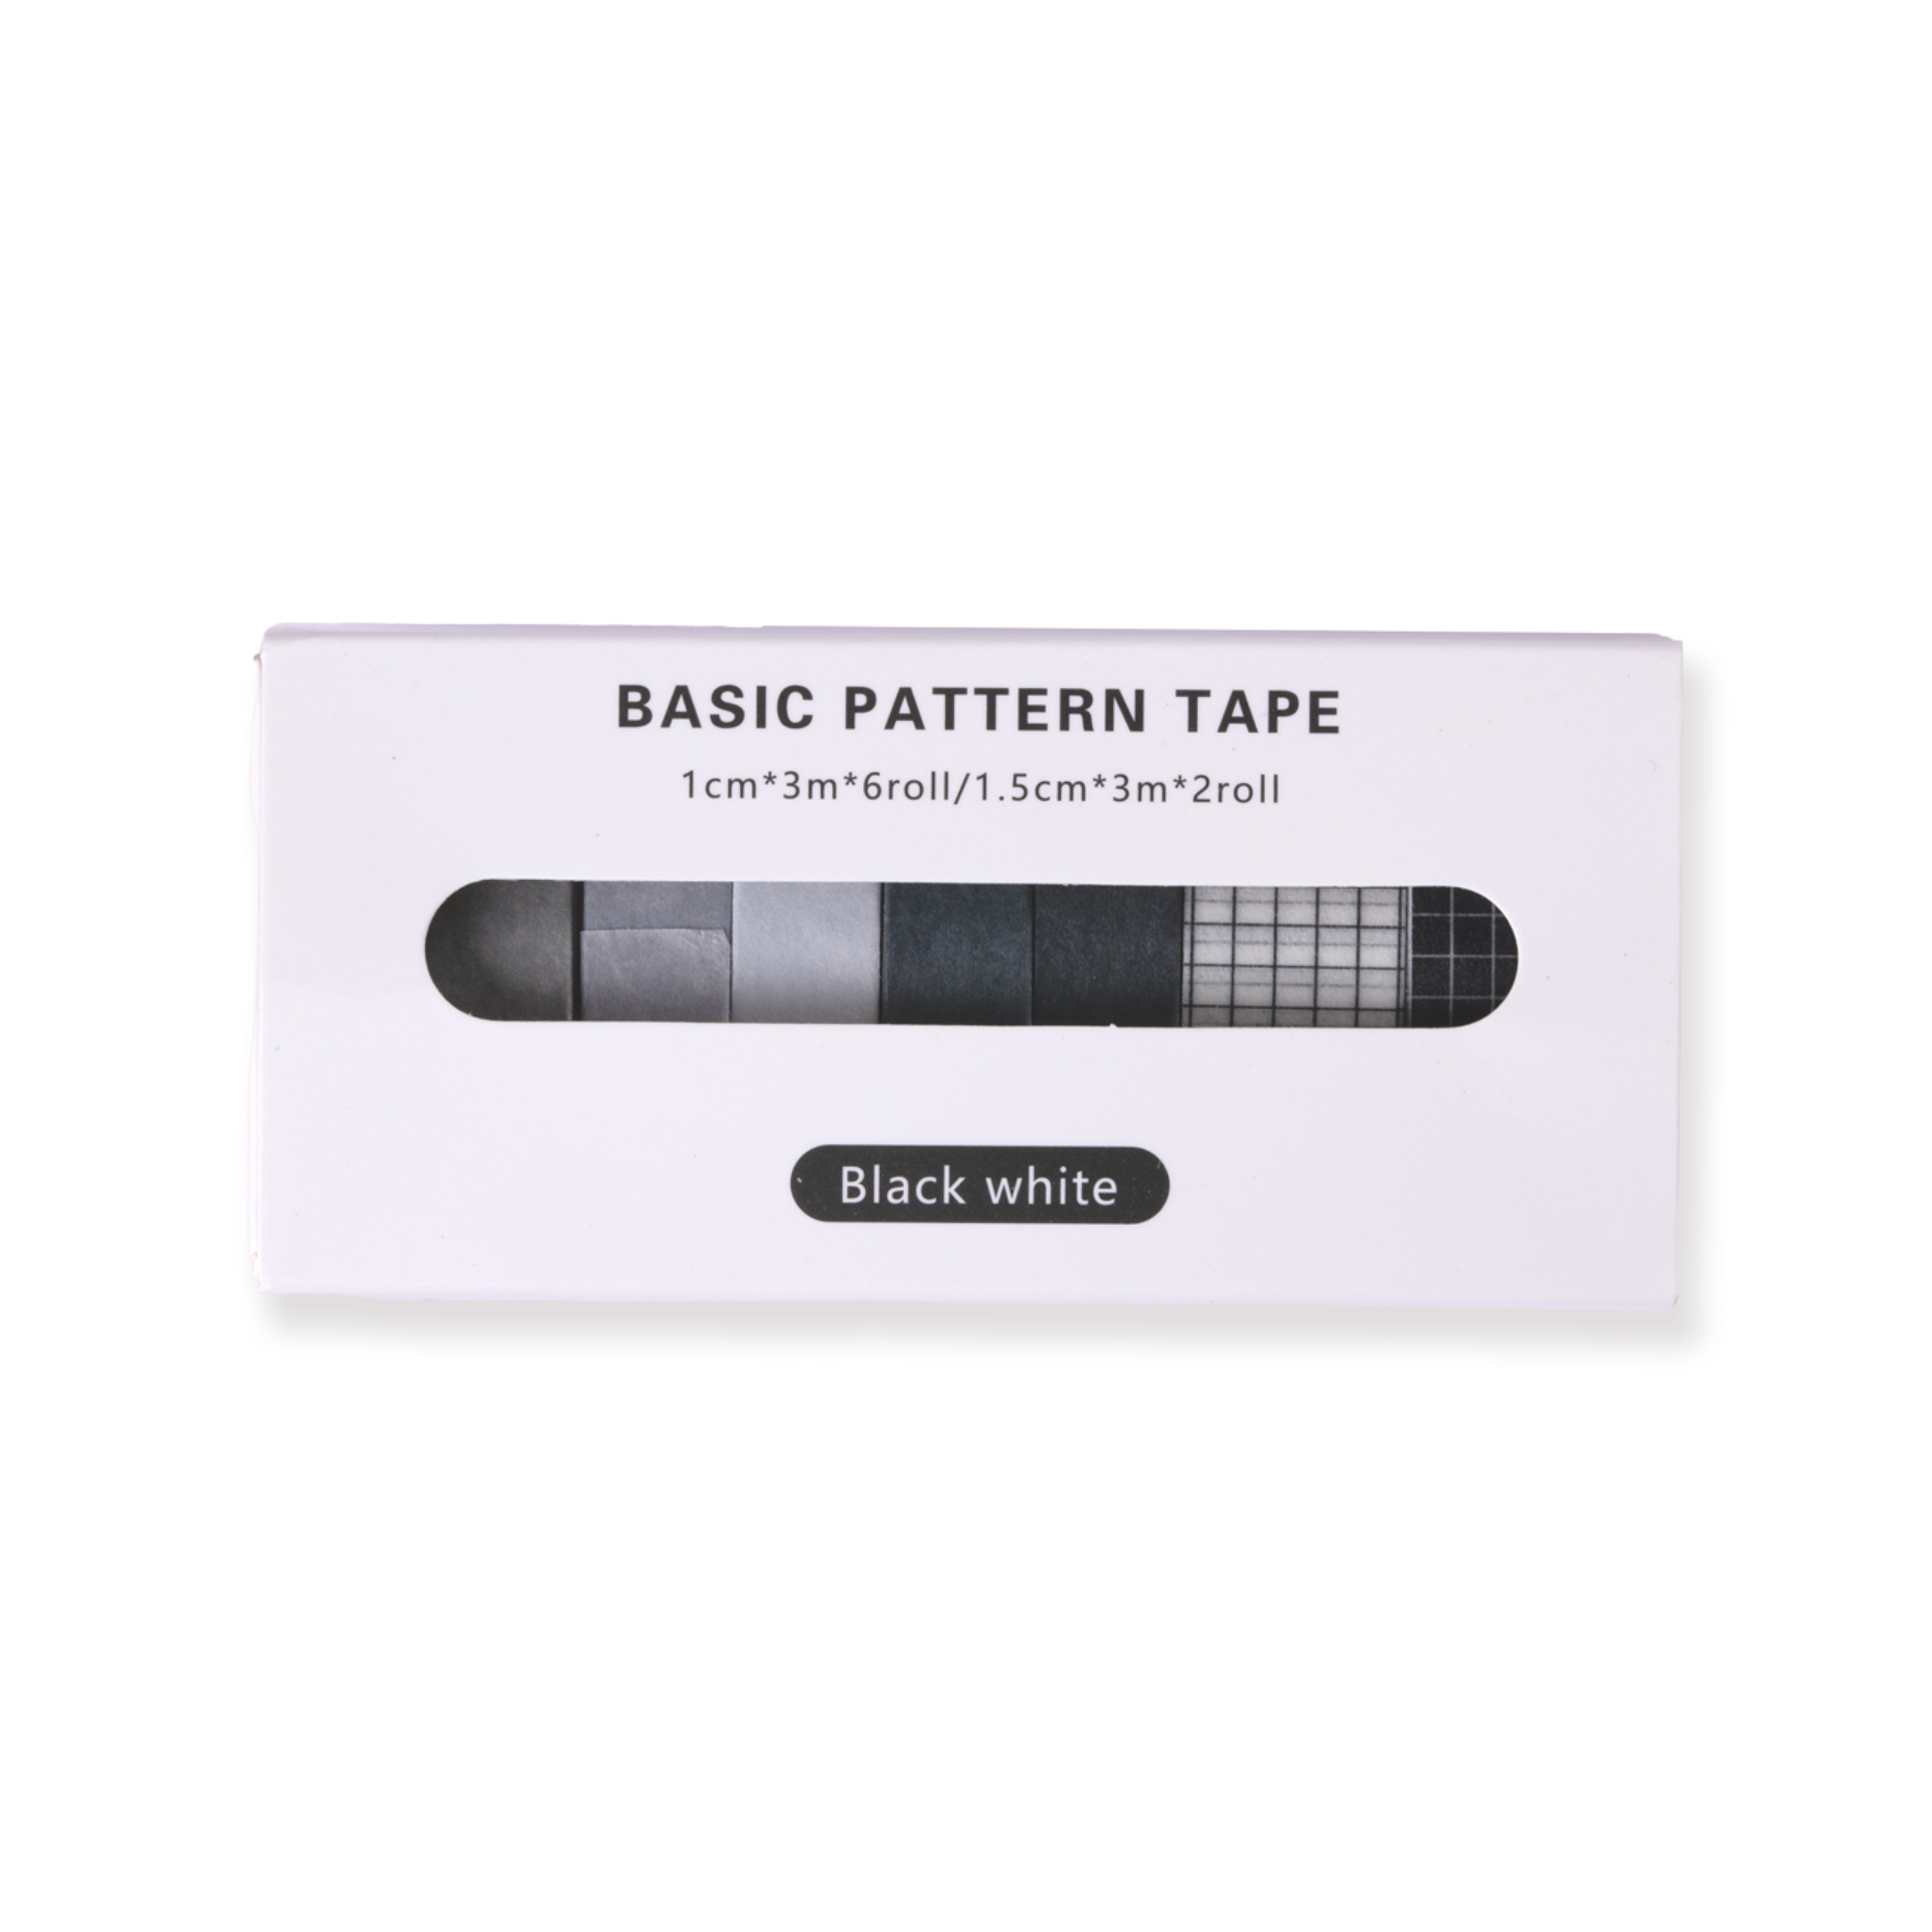 Washi Tape con patrón básico - Blanco y negro - Juego de 8